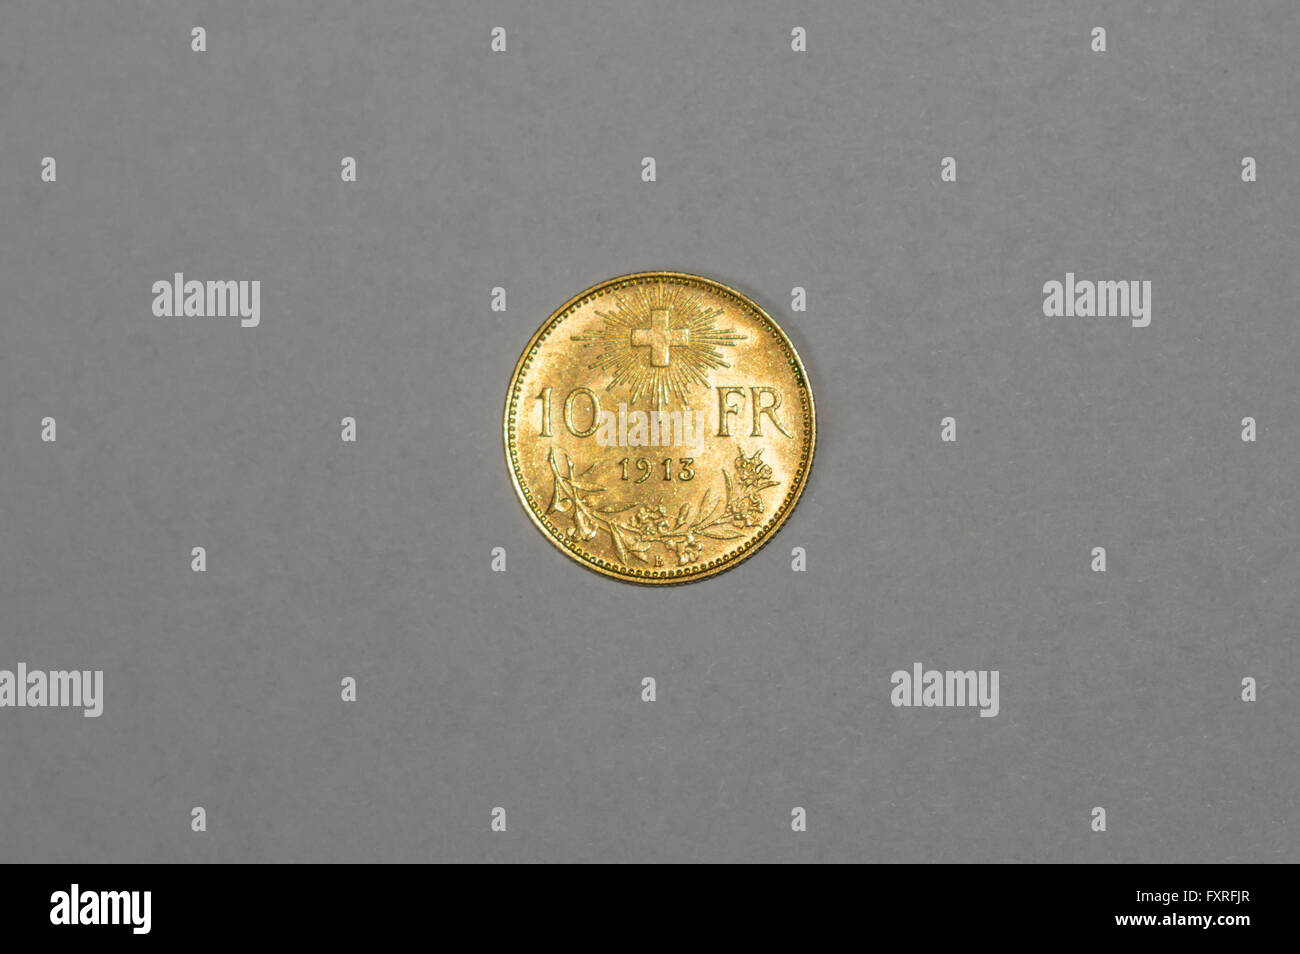 10 Schweizer Franken gold Münze, genannt Goldvreneli. Im Jahre 1913 geprägt. Stockfoto